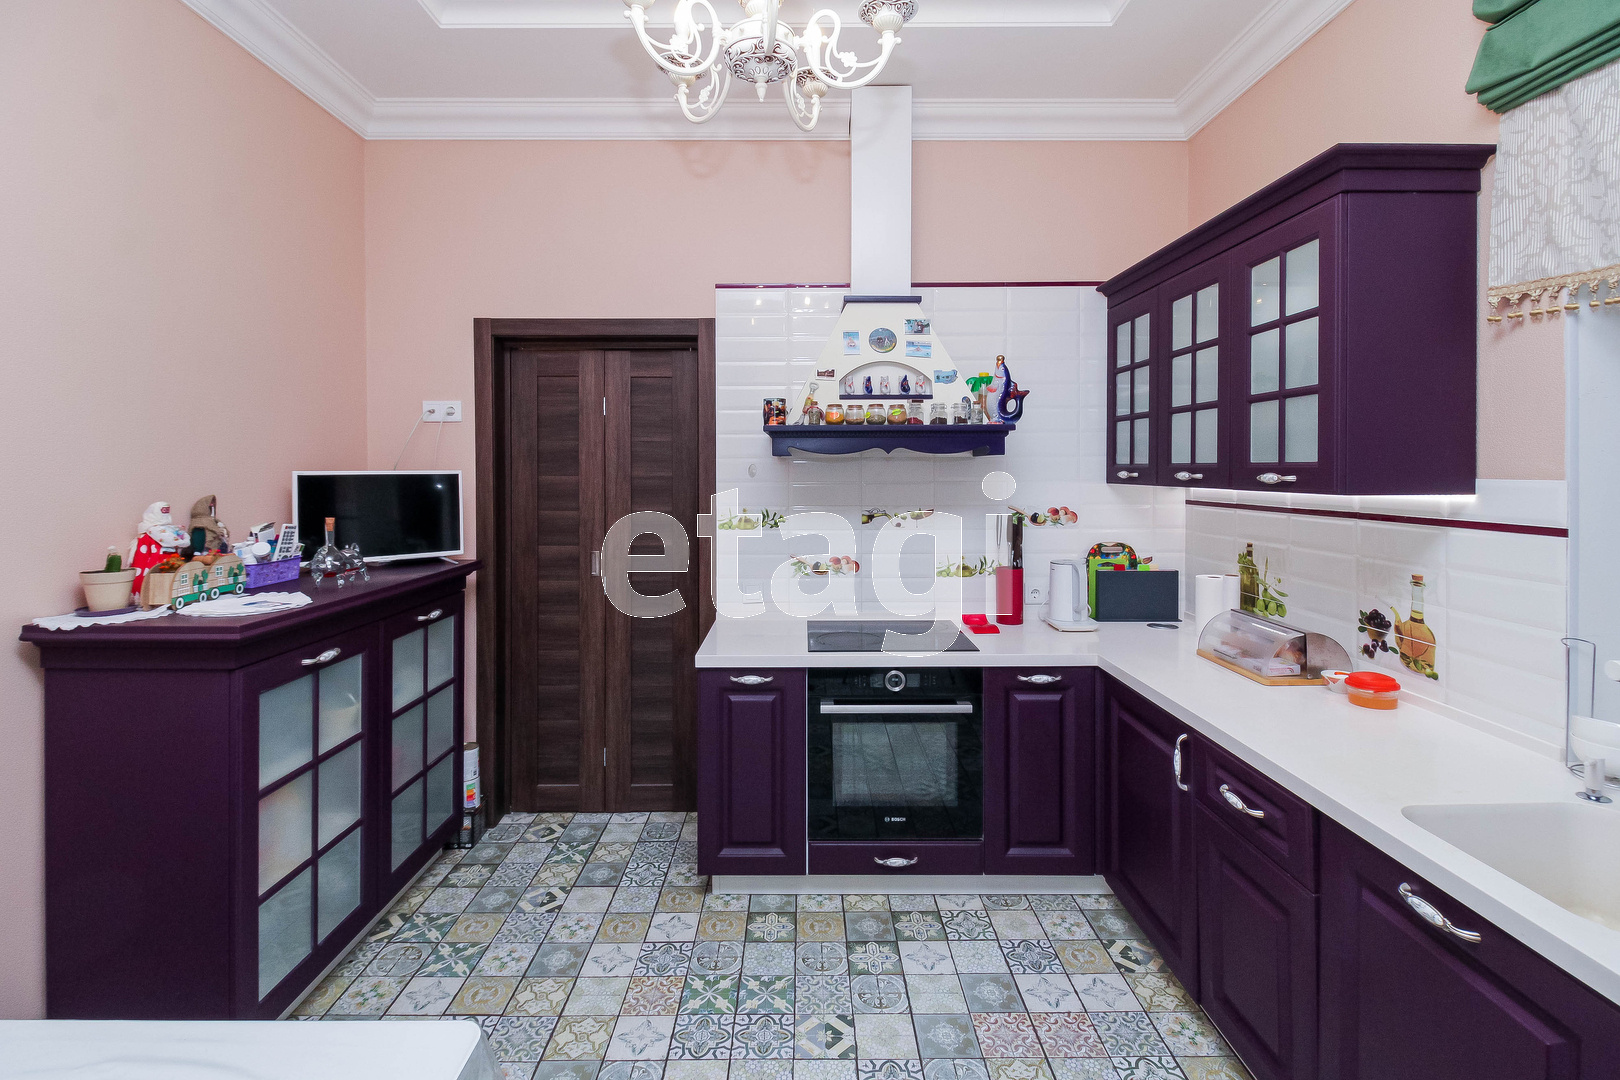 Кухня выглядит более по-домашнему. Для гарнитура выбрали насыщенный фиолетовый оттенок. Вся техника остается новому владельцу